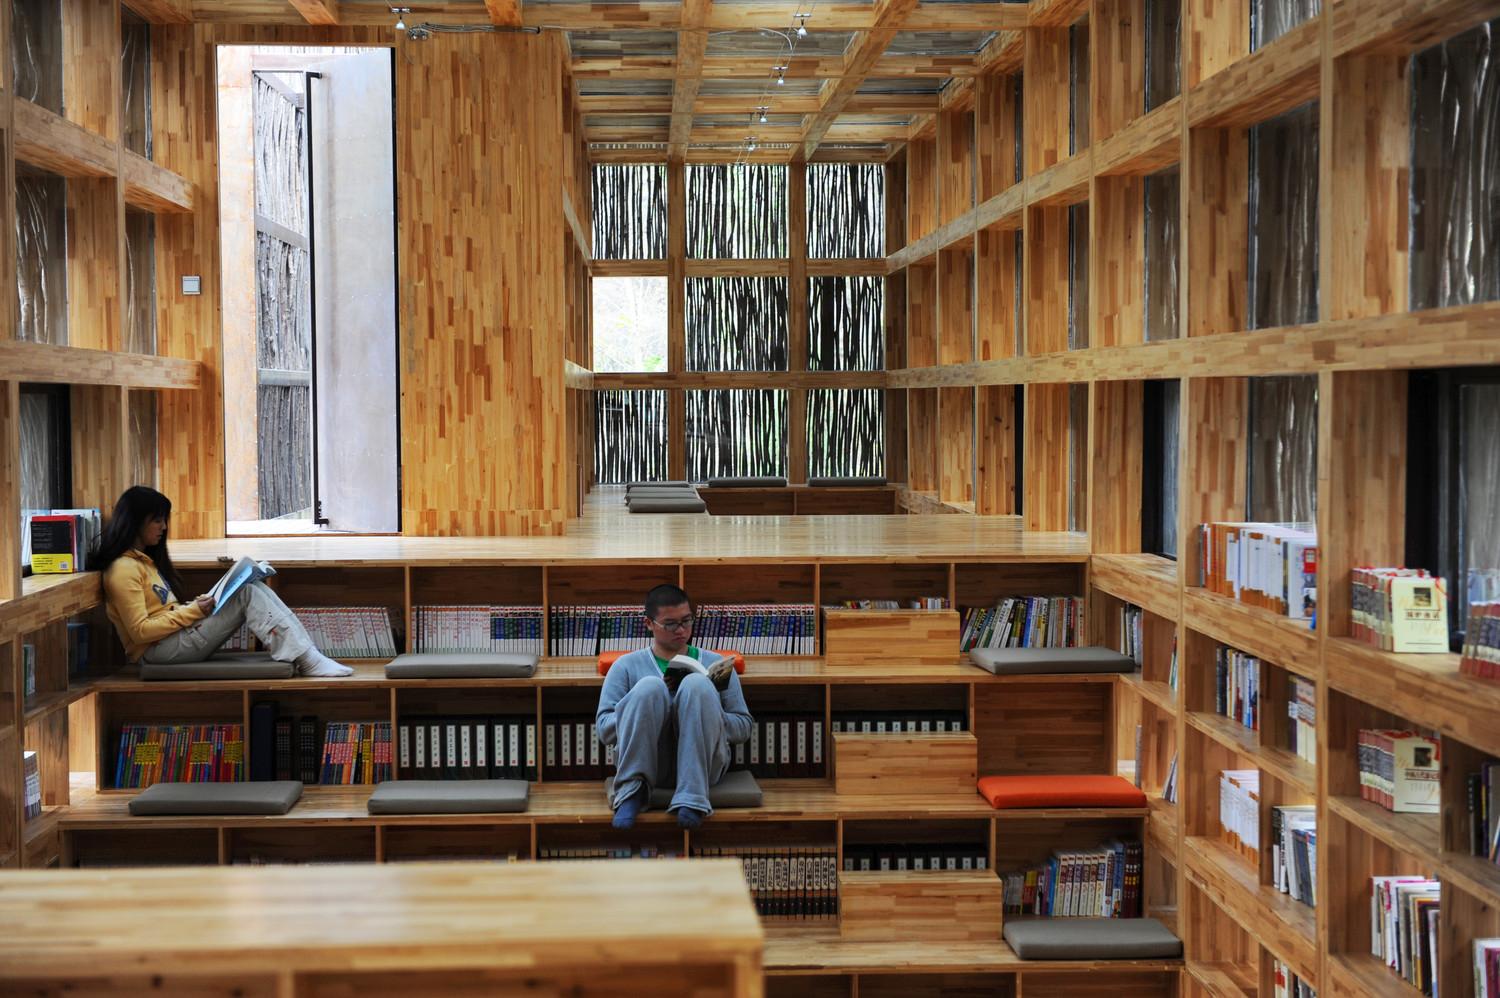 Liyuan Library - Interior view